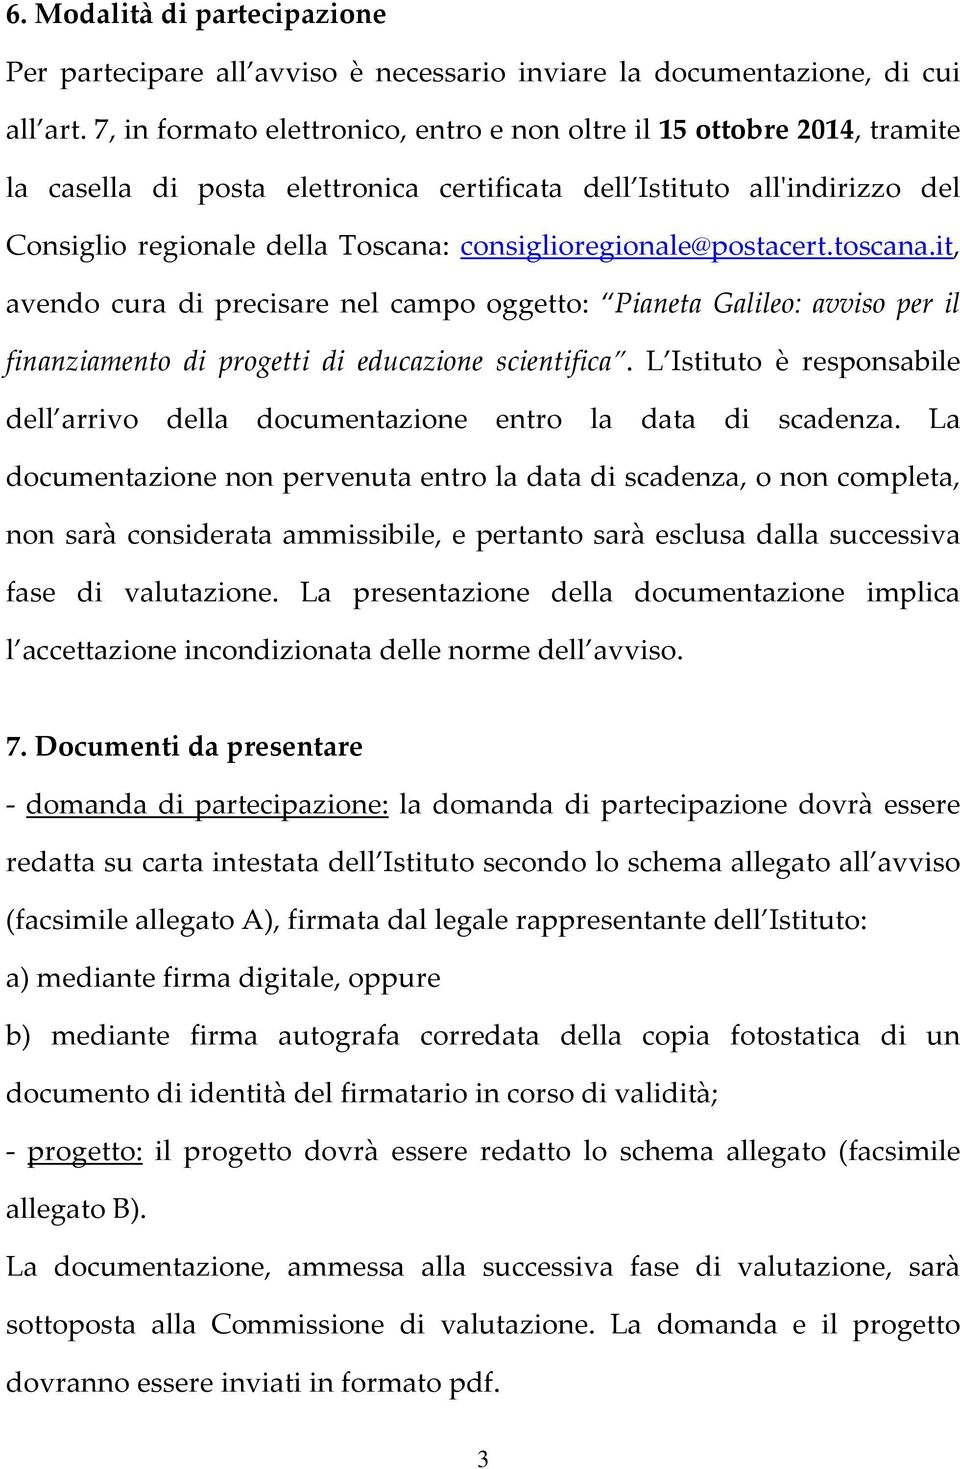 consiglioregionale@postacert.toscana.it, avendo cura di precisare nel campo oggetto: Pianeta Galileo: avviso per il finanziamento di progetti di educazione scientifica.